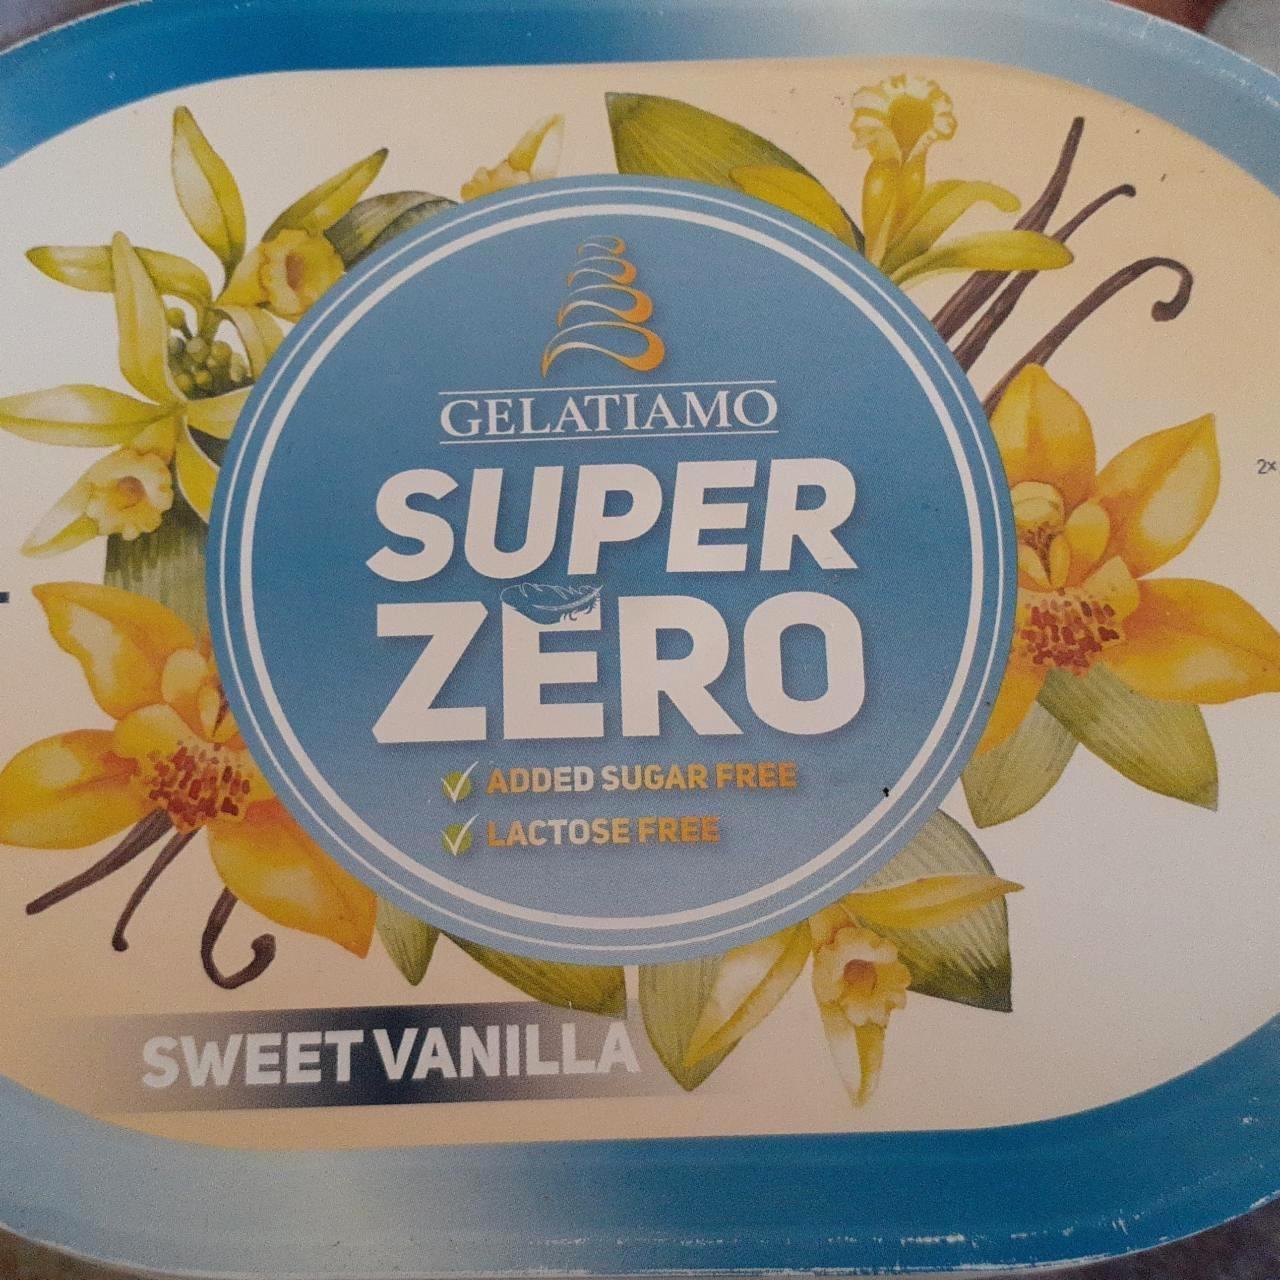 Képek - Super zero sweet vanilla Gelatiamo